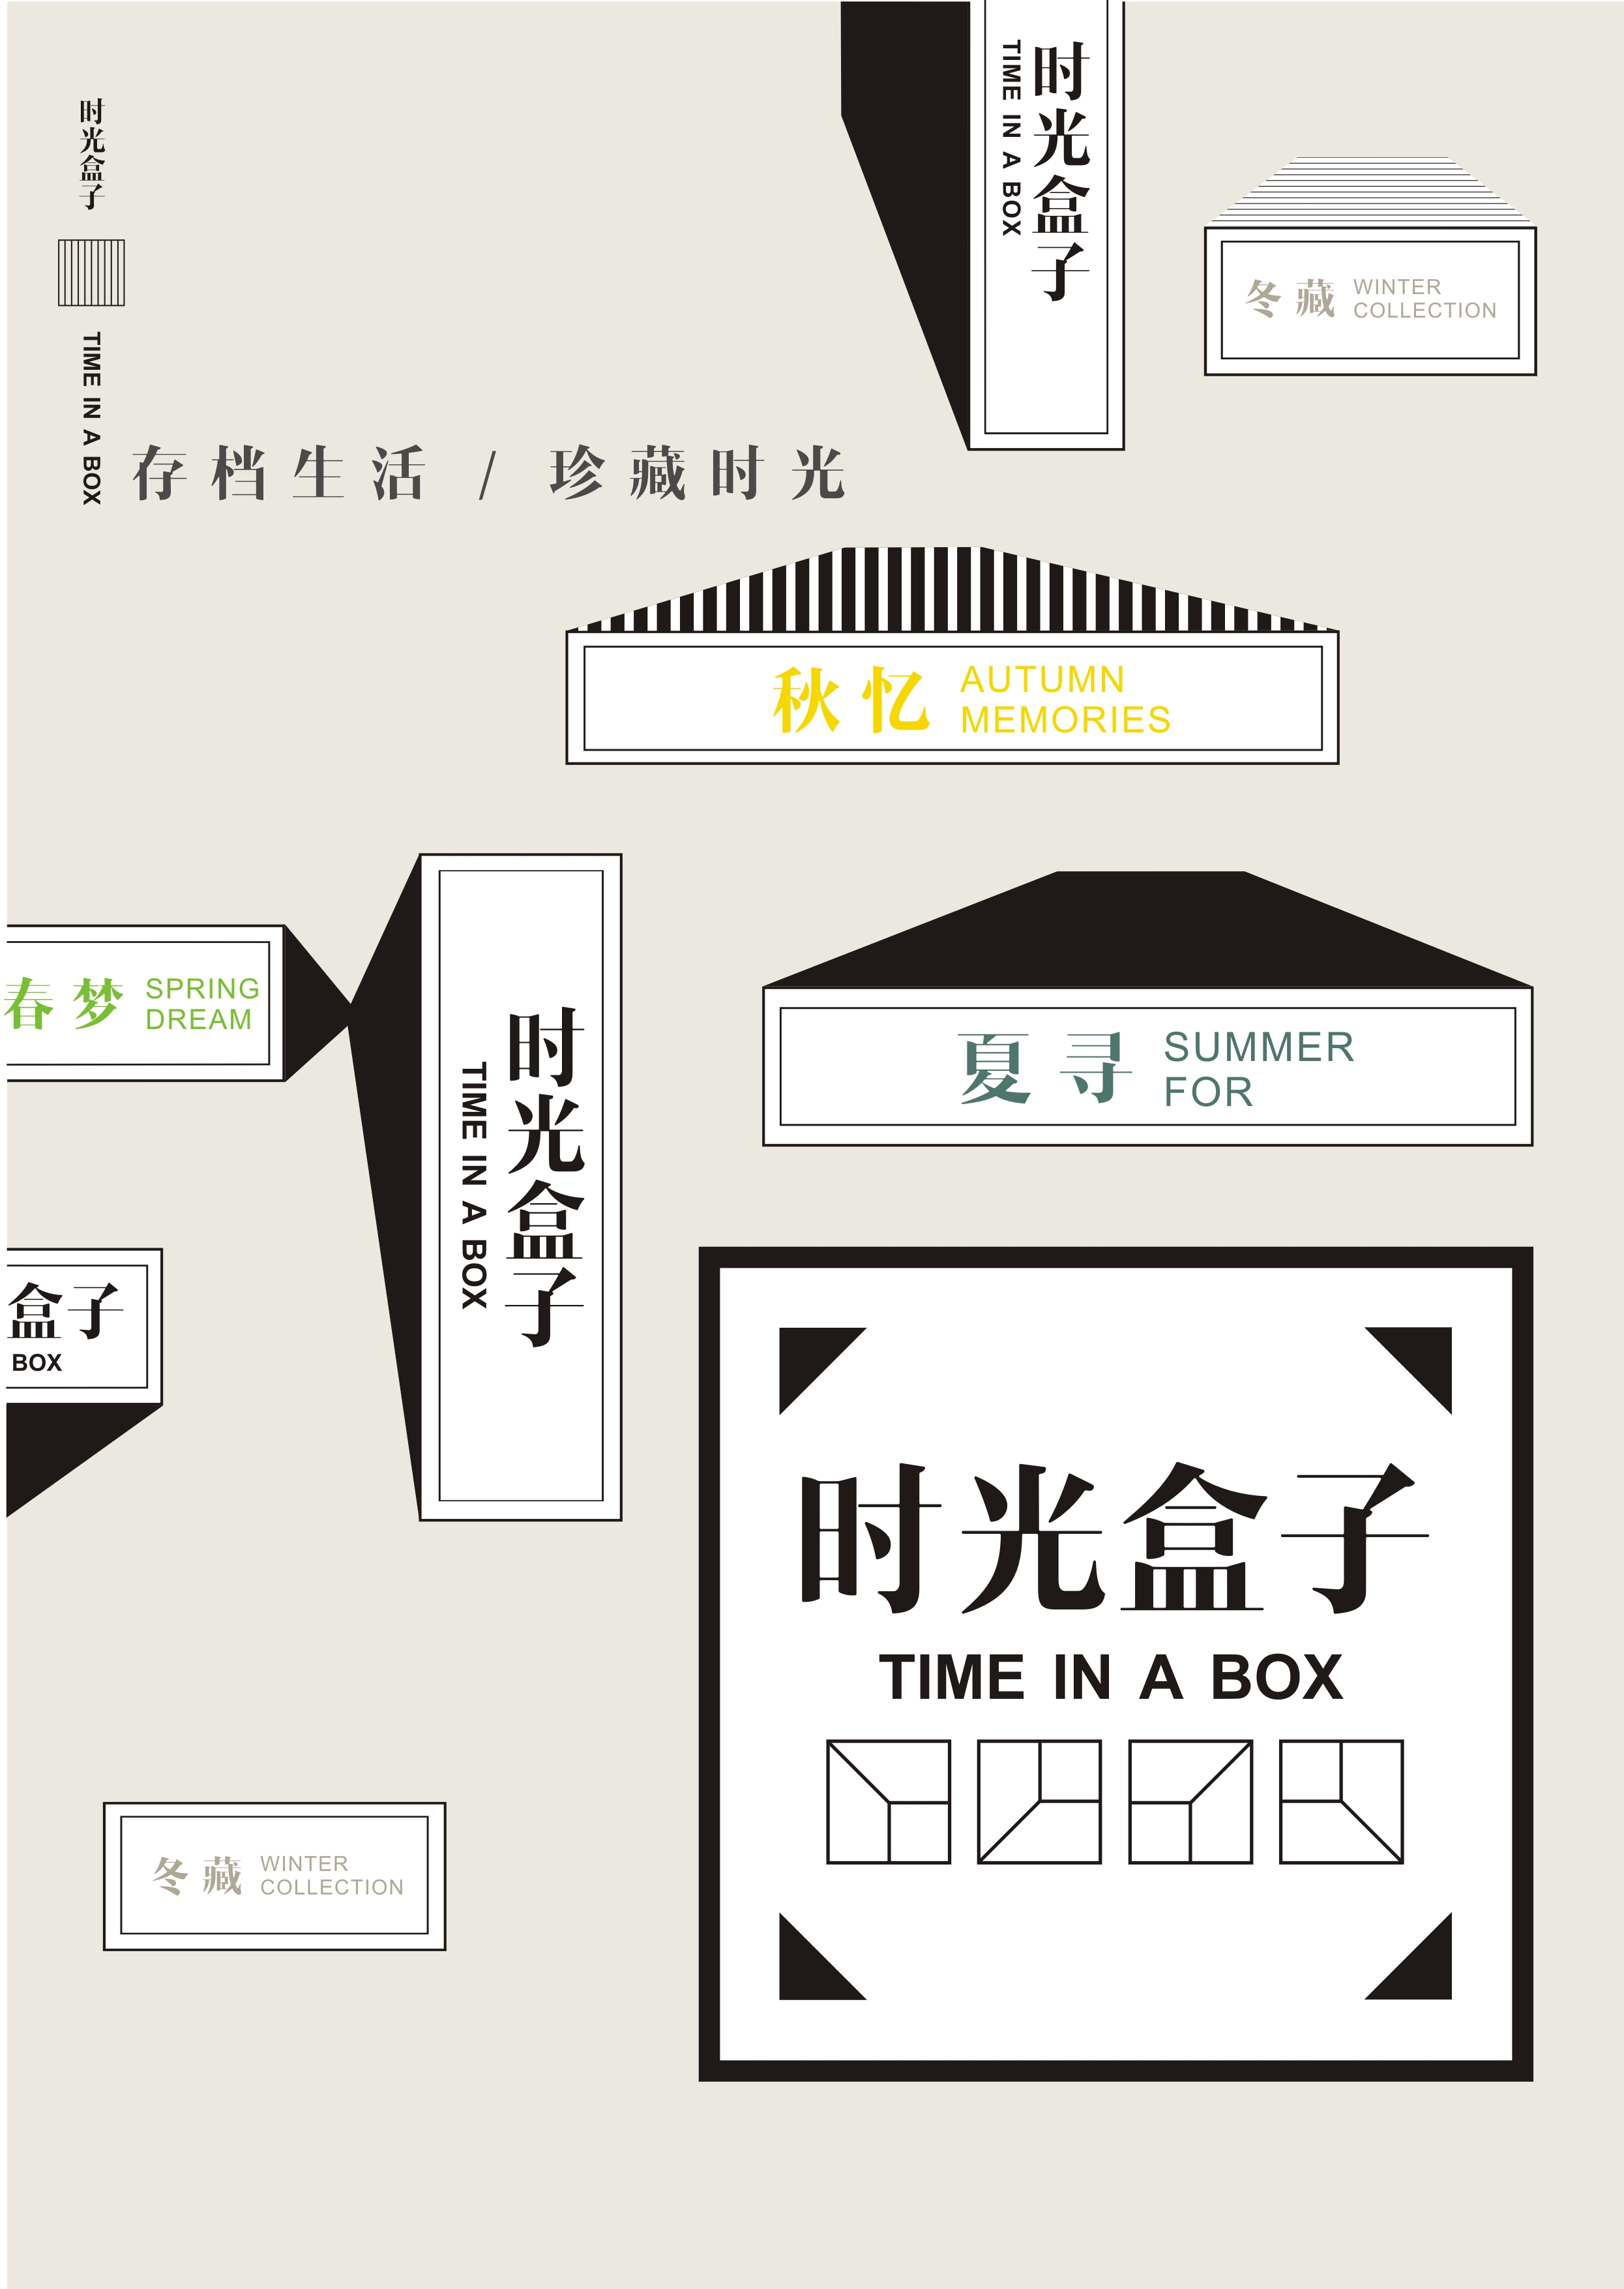 《时光盒子》 武汉轻工大学 柒一一 #青春答卷2014